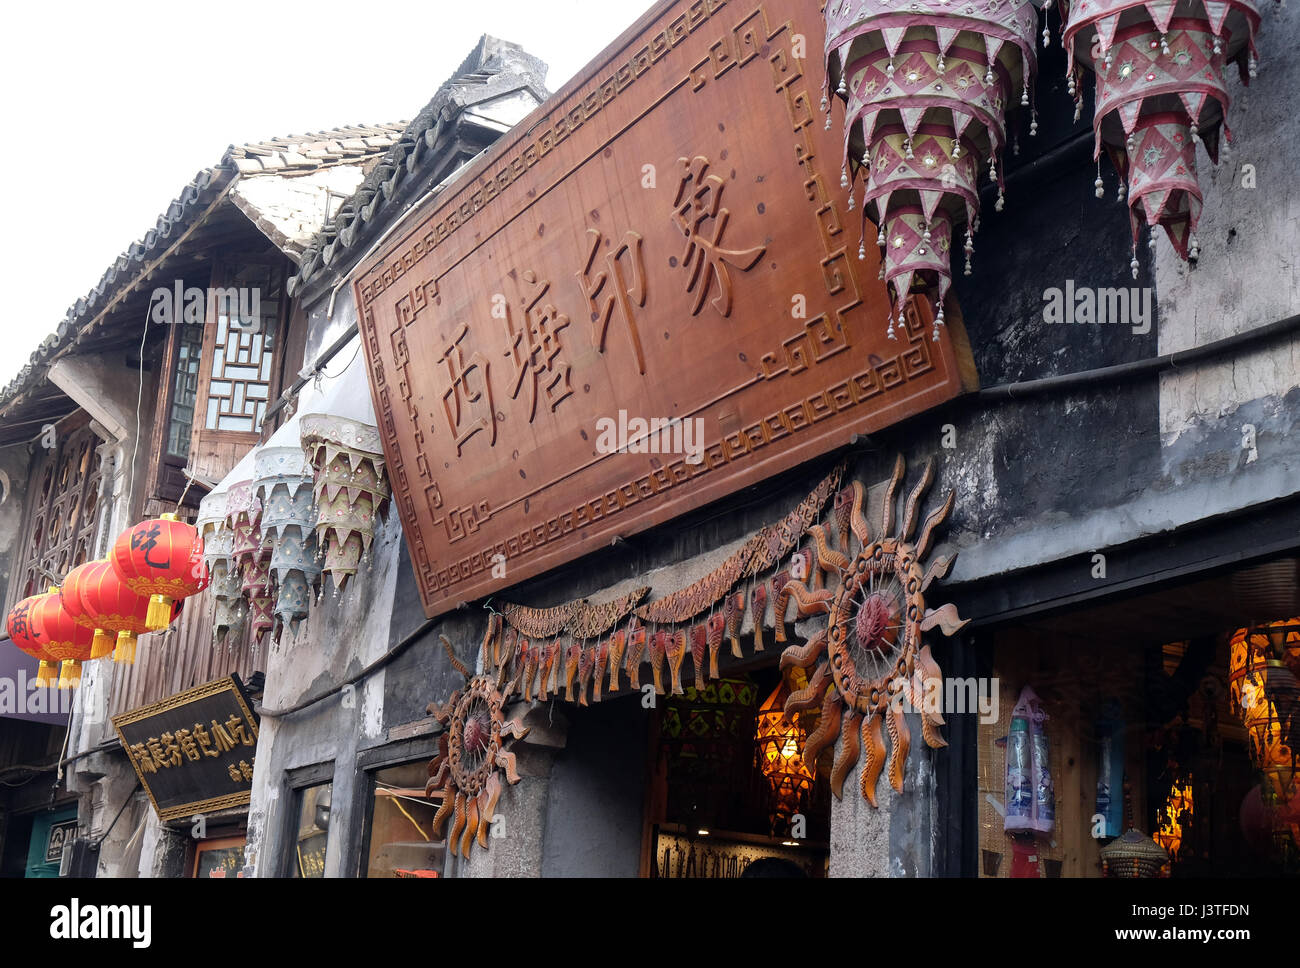 Village de l'eau chinois Xitang. C'est un des six, ancienne ville de destination situé dans la province de Zhejiang, Chine, le 20 février 2016. Banque D'Images